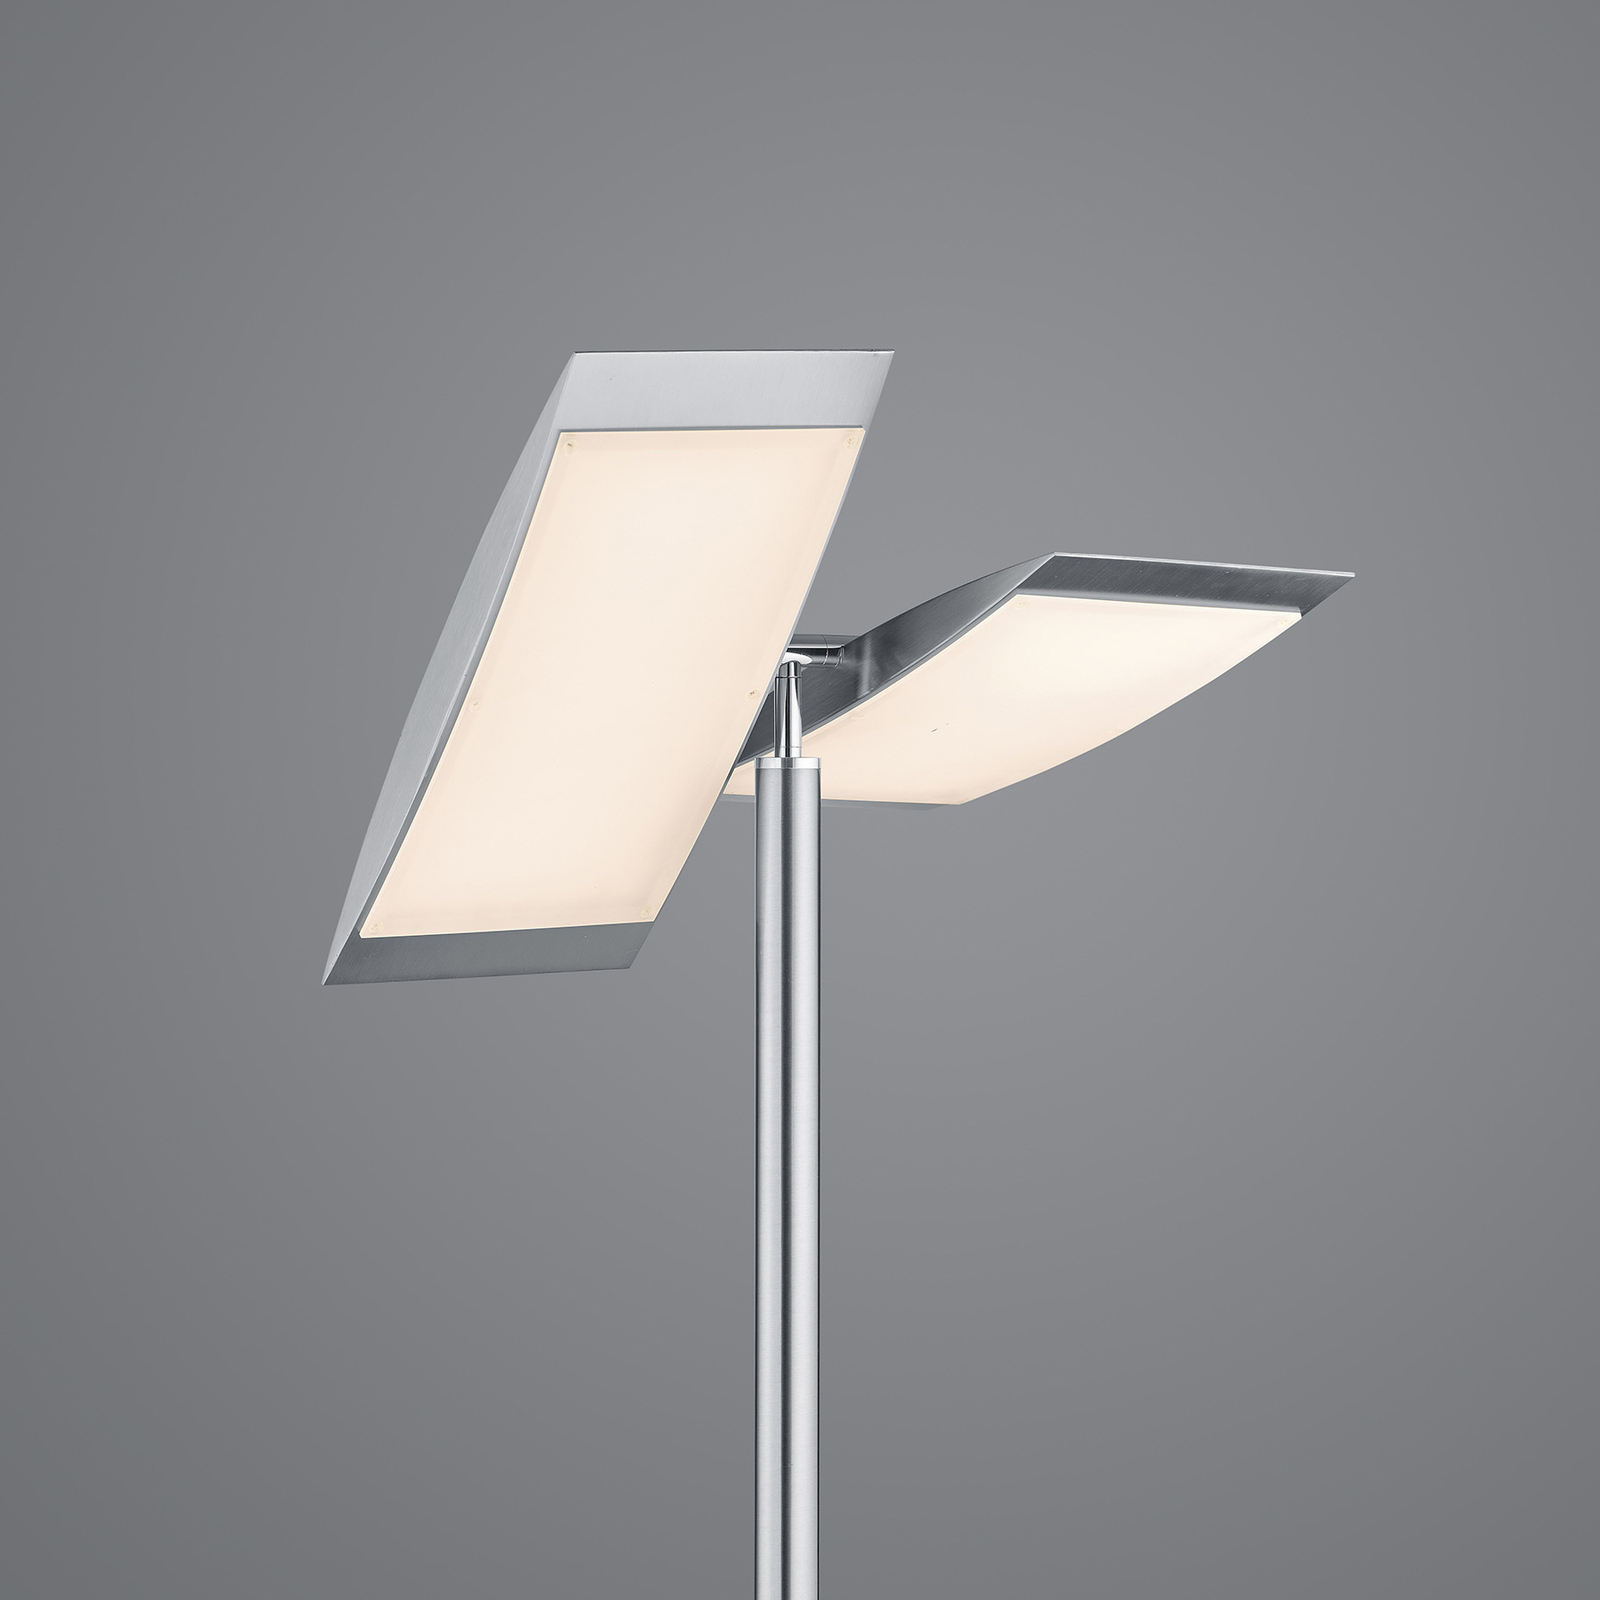 LED floor lamp Wim 2-bulb reading lamp nickel/chrome